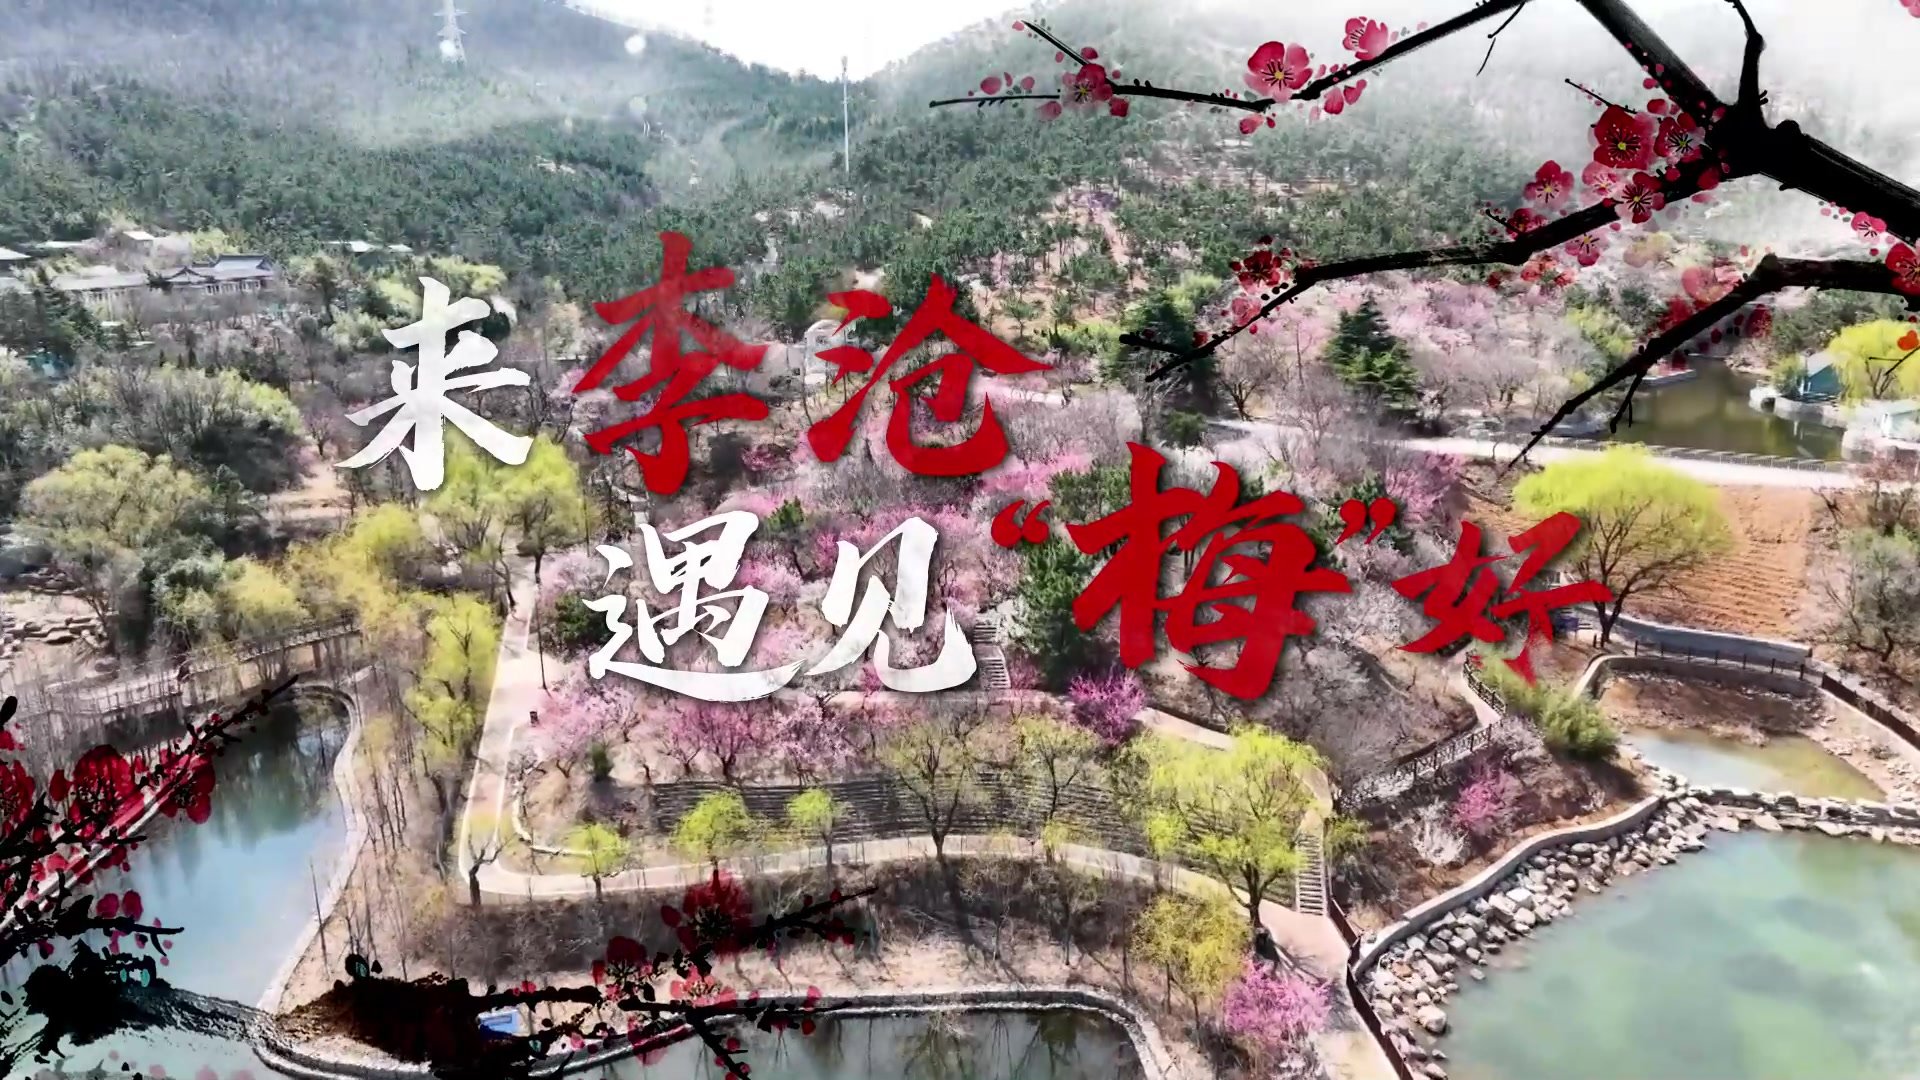 又是一年梅花开 第二十三届中国·青岛梅花节在李沧区十梅庵举办